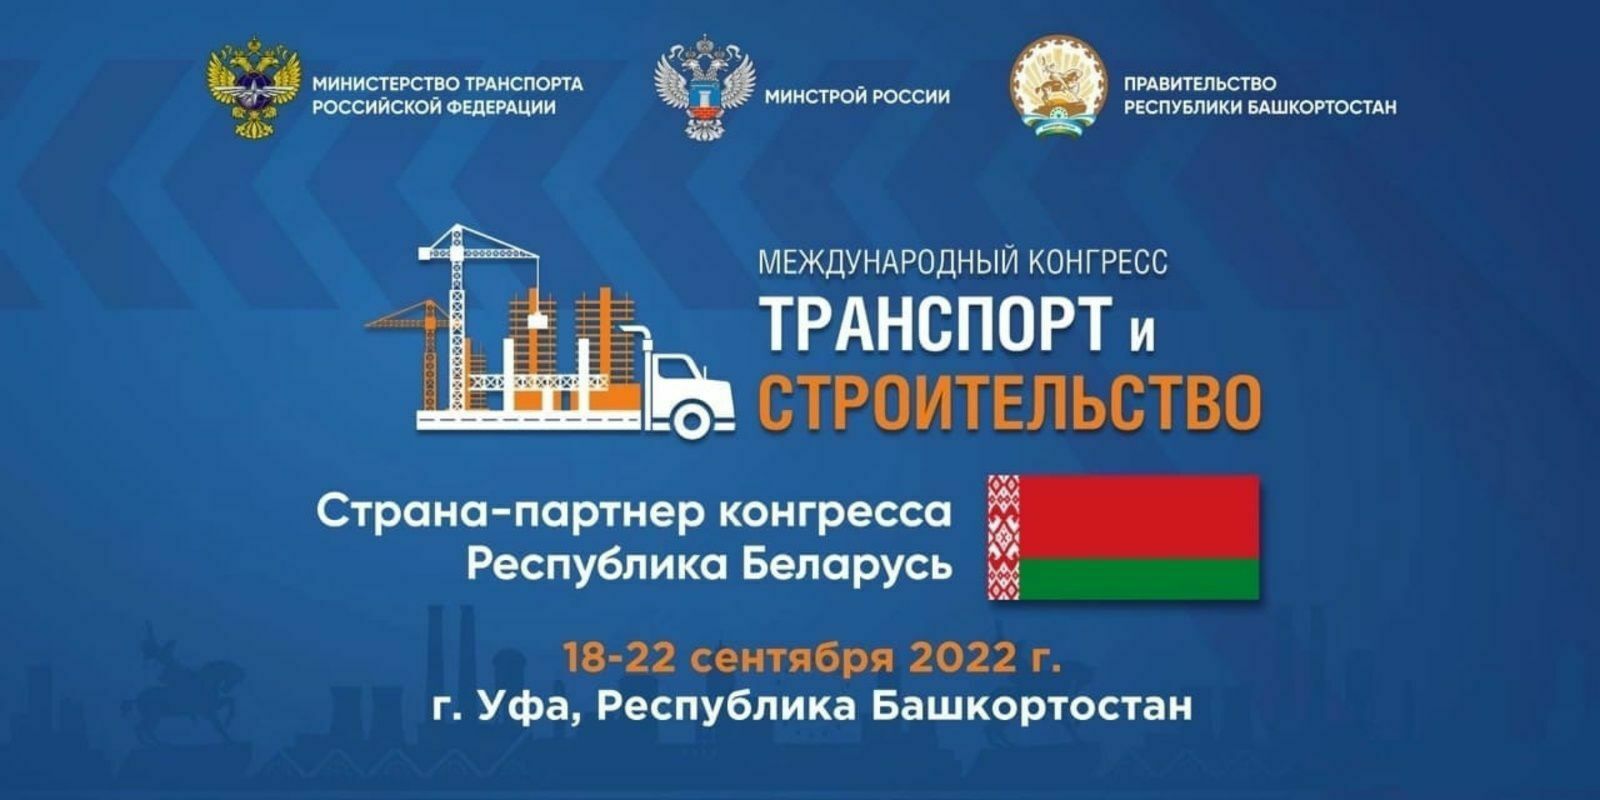 На Международном конгрессе «Транспорт и строительство» в Уфе встретятся крупнейшие застройщики России